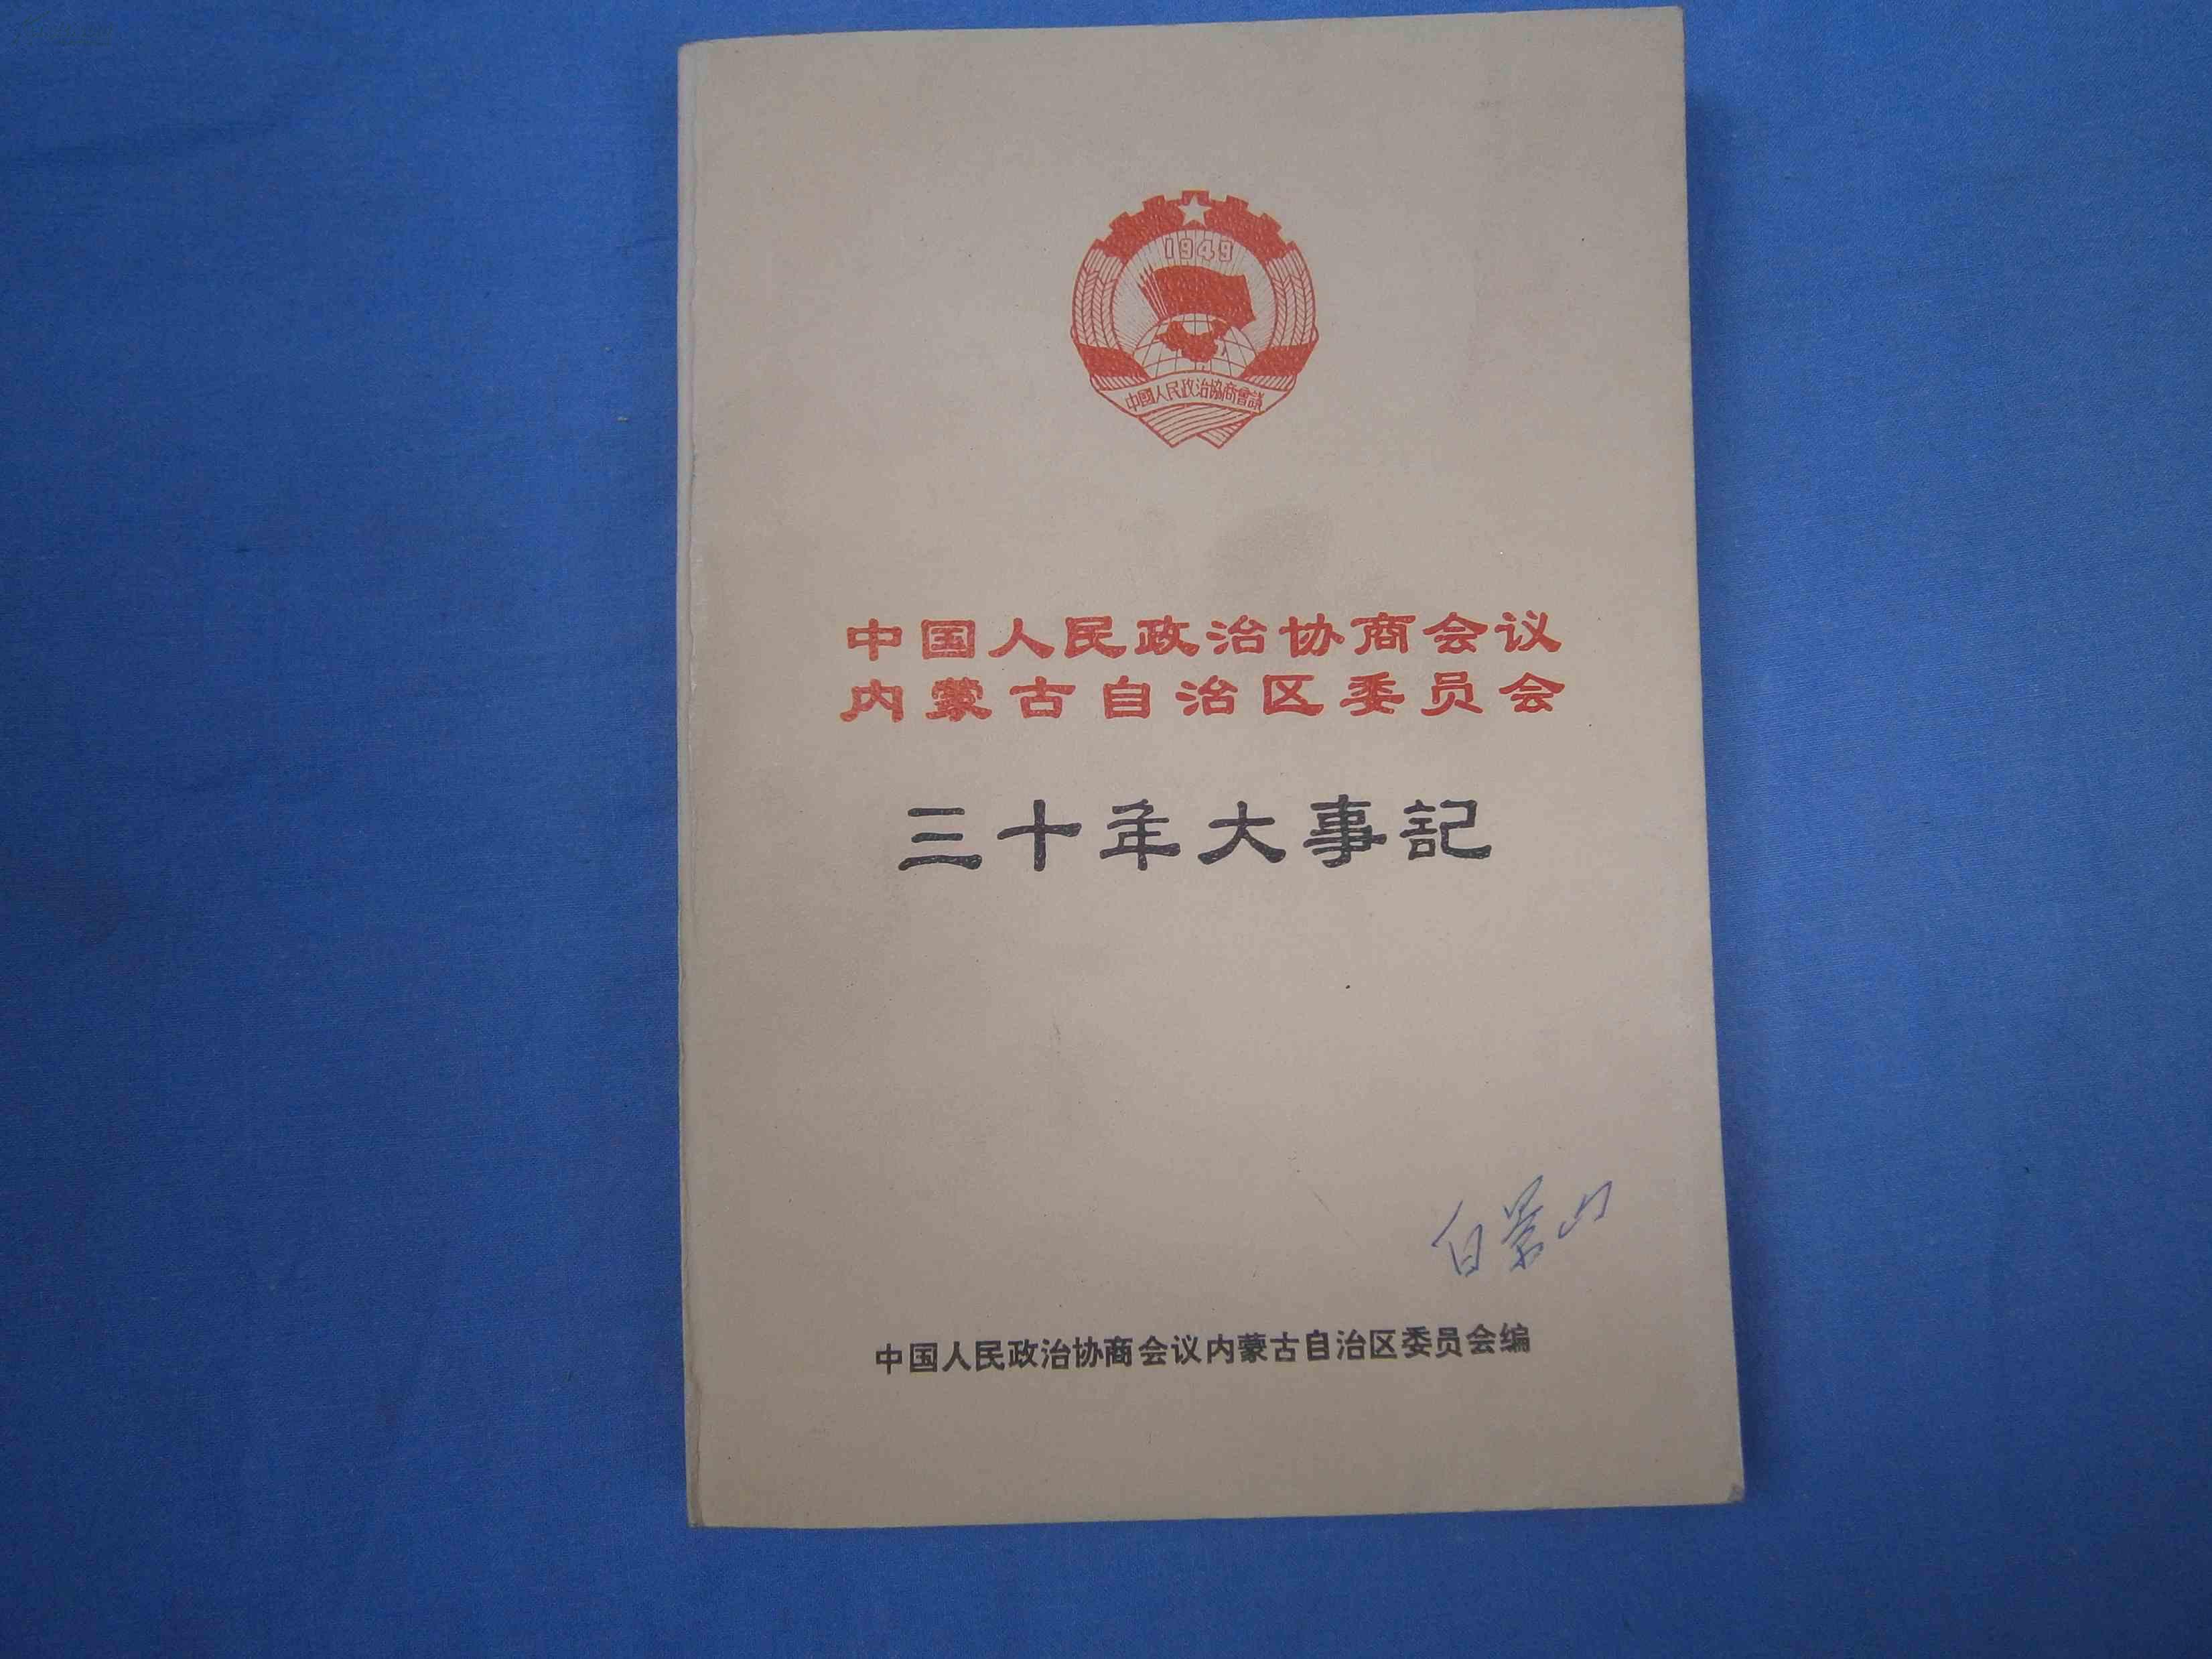 中国人民政治协商会议内蒙古自治区委员会-三十年大事记